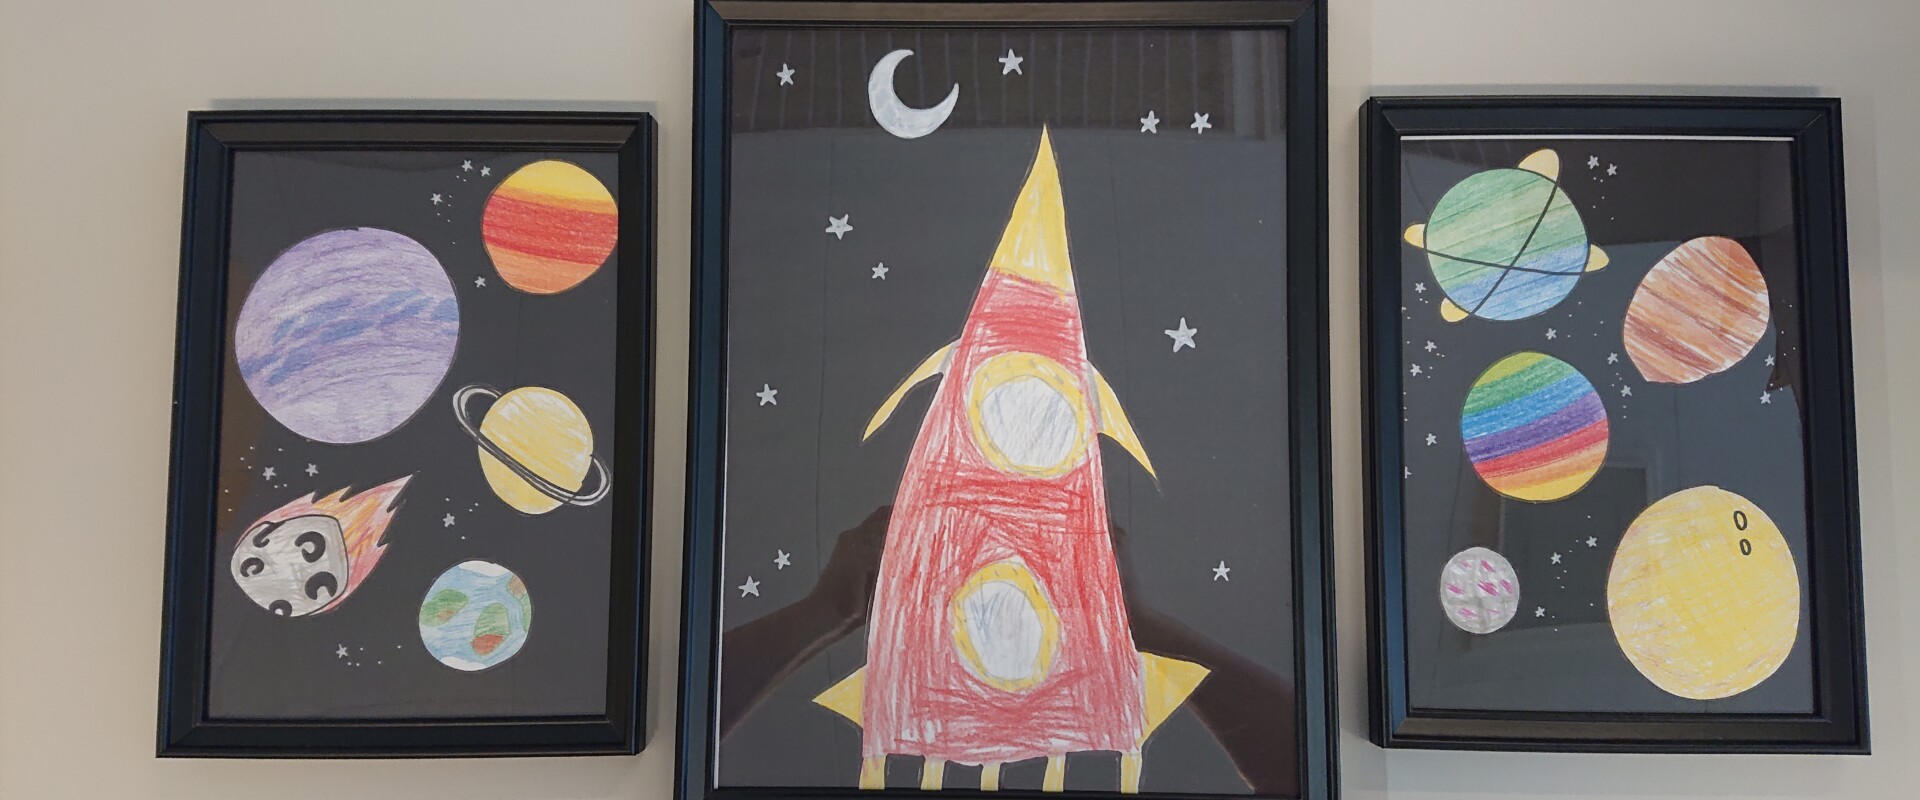 Kolme lapsen piirtämää avaruustaulua.